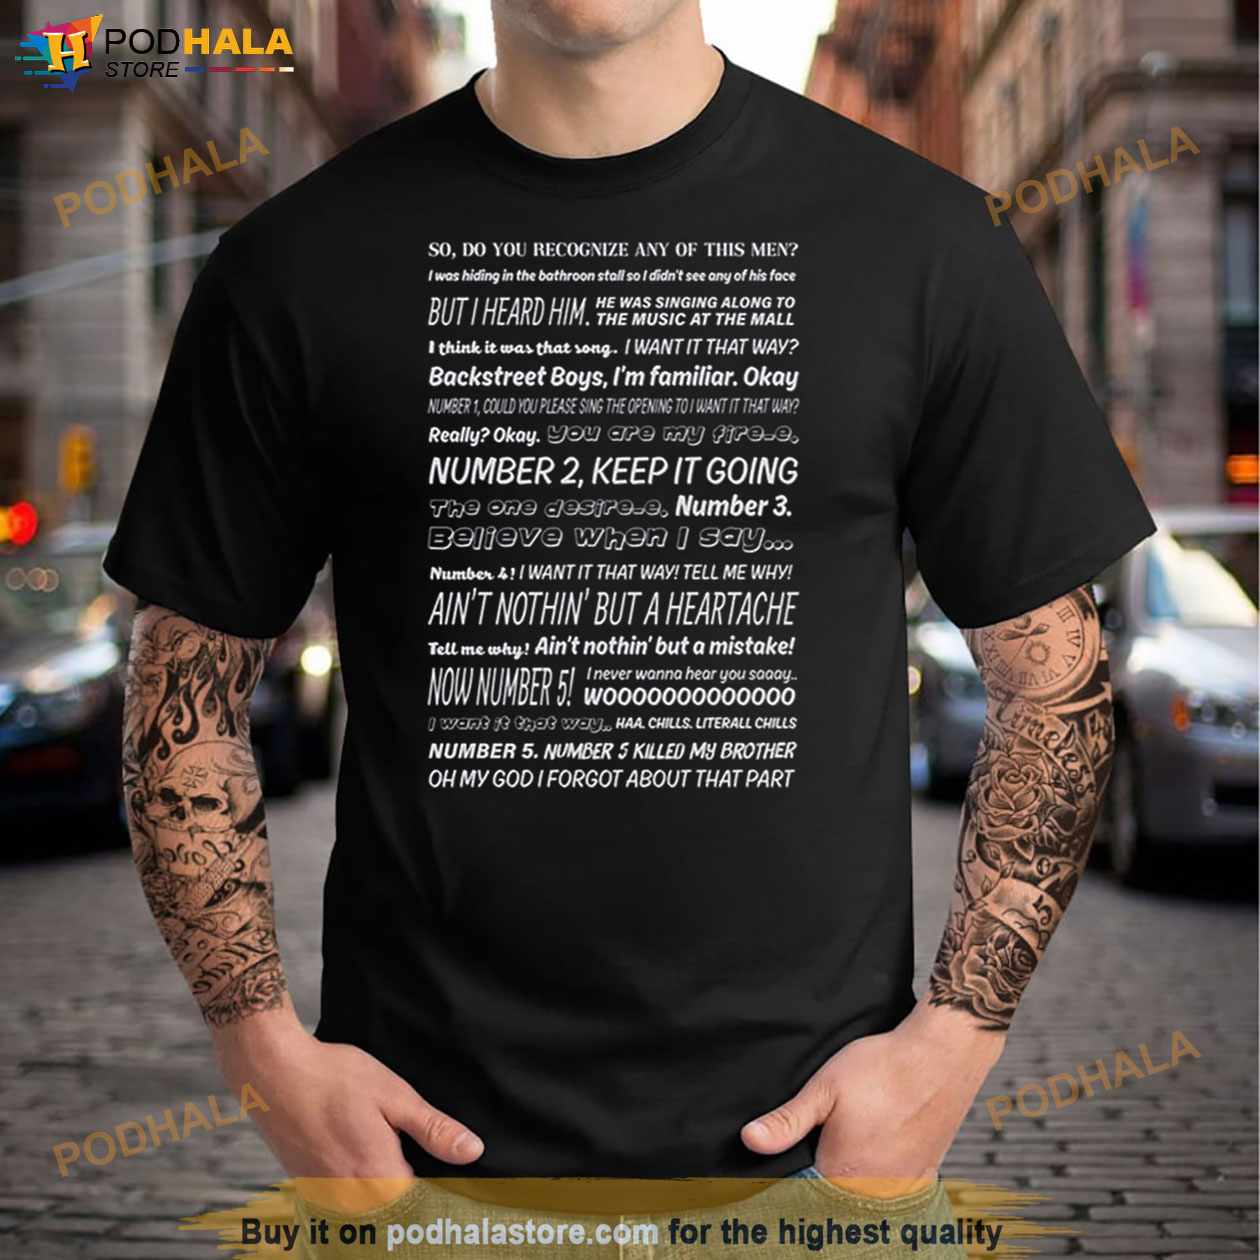 Share more than 70 brooklyn 99 tattoo ideas  thtantai2